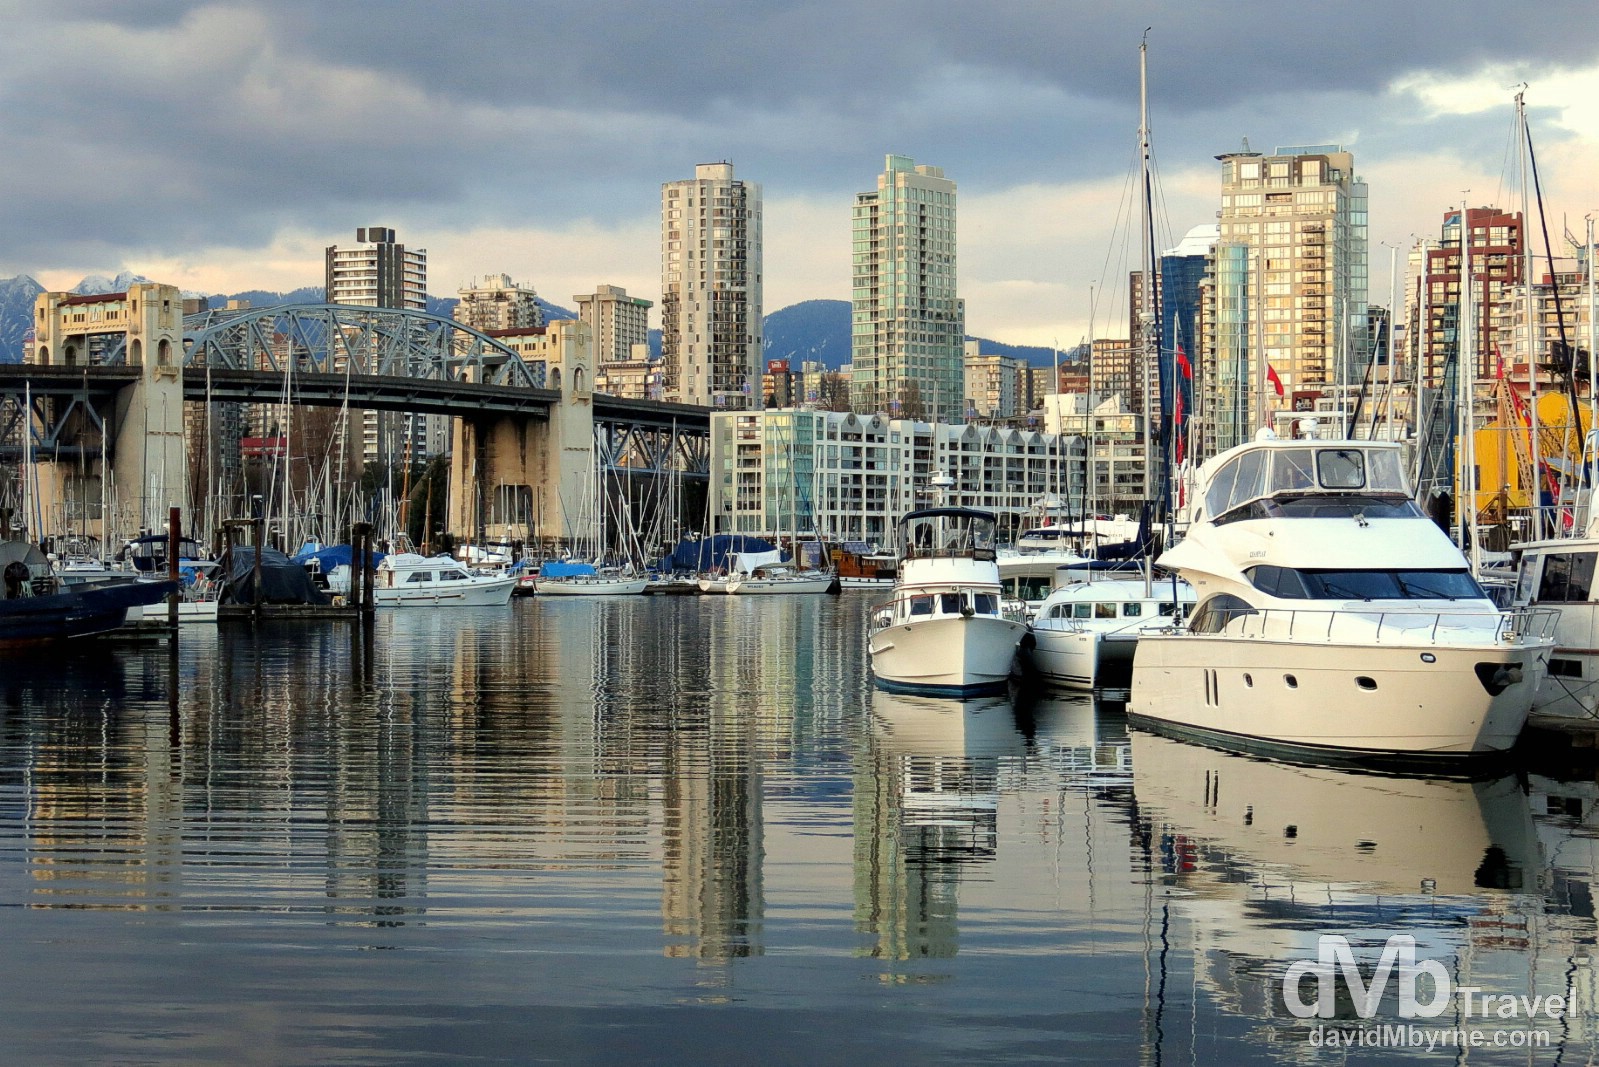 Burrard Civic Marina near Granville Island, Vancouver, British Columbia, Canada. March 23rd 2013.